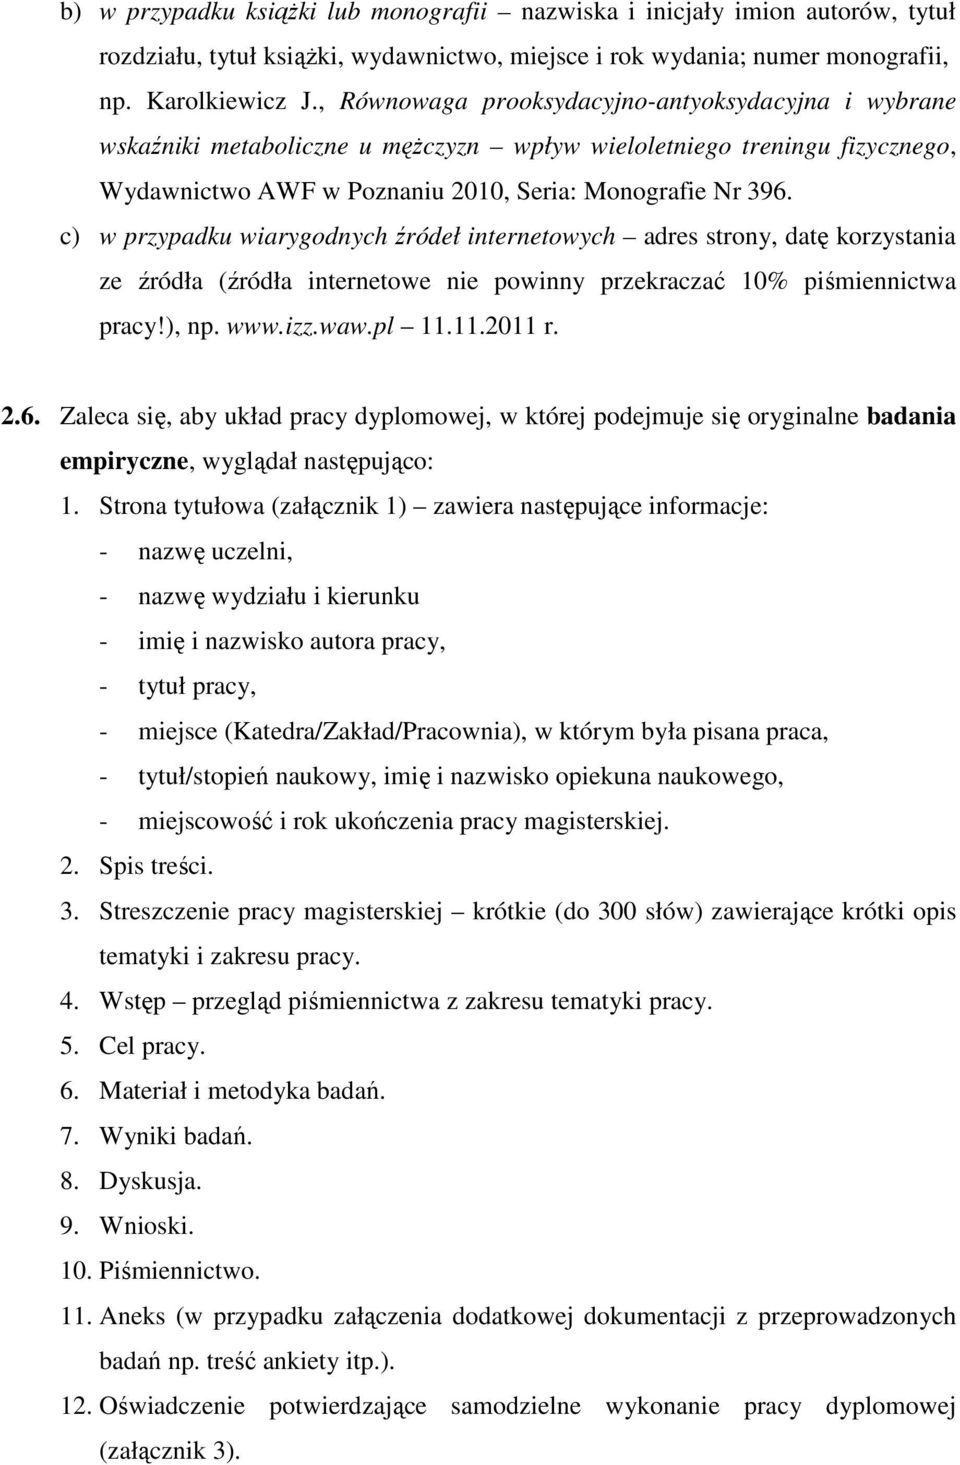 c) w przypadku wiarygodnych źródeł internetowych adres strony, datę korzystania ze źródła (źródła internetowe nie powinny przekraczać 10% piśmiennictwa pracy!), np. www.izz.waw.pl 11.11.2011 r. 2.6.